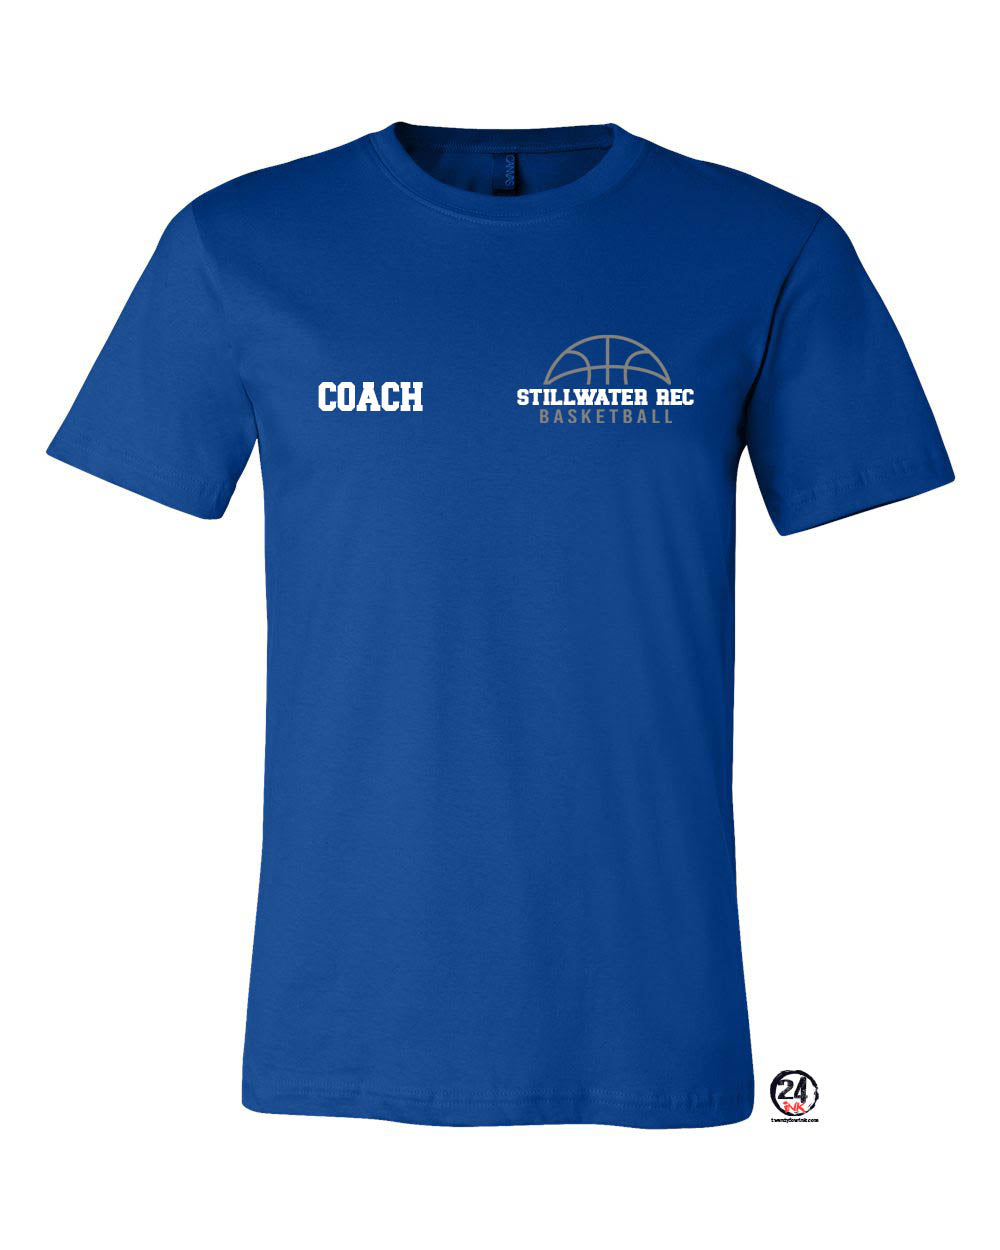 Stillwater Basketball Coach T-Shirt